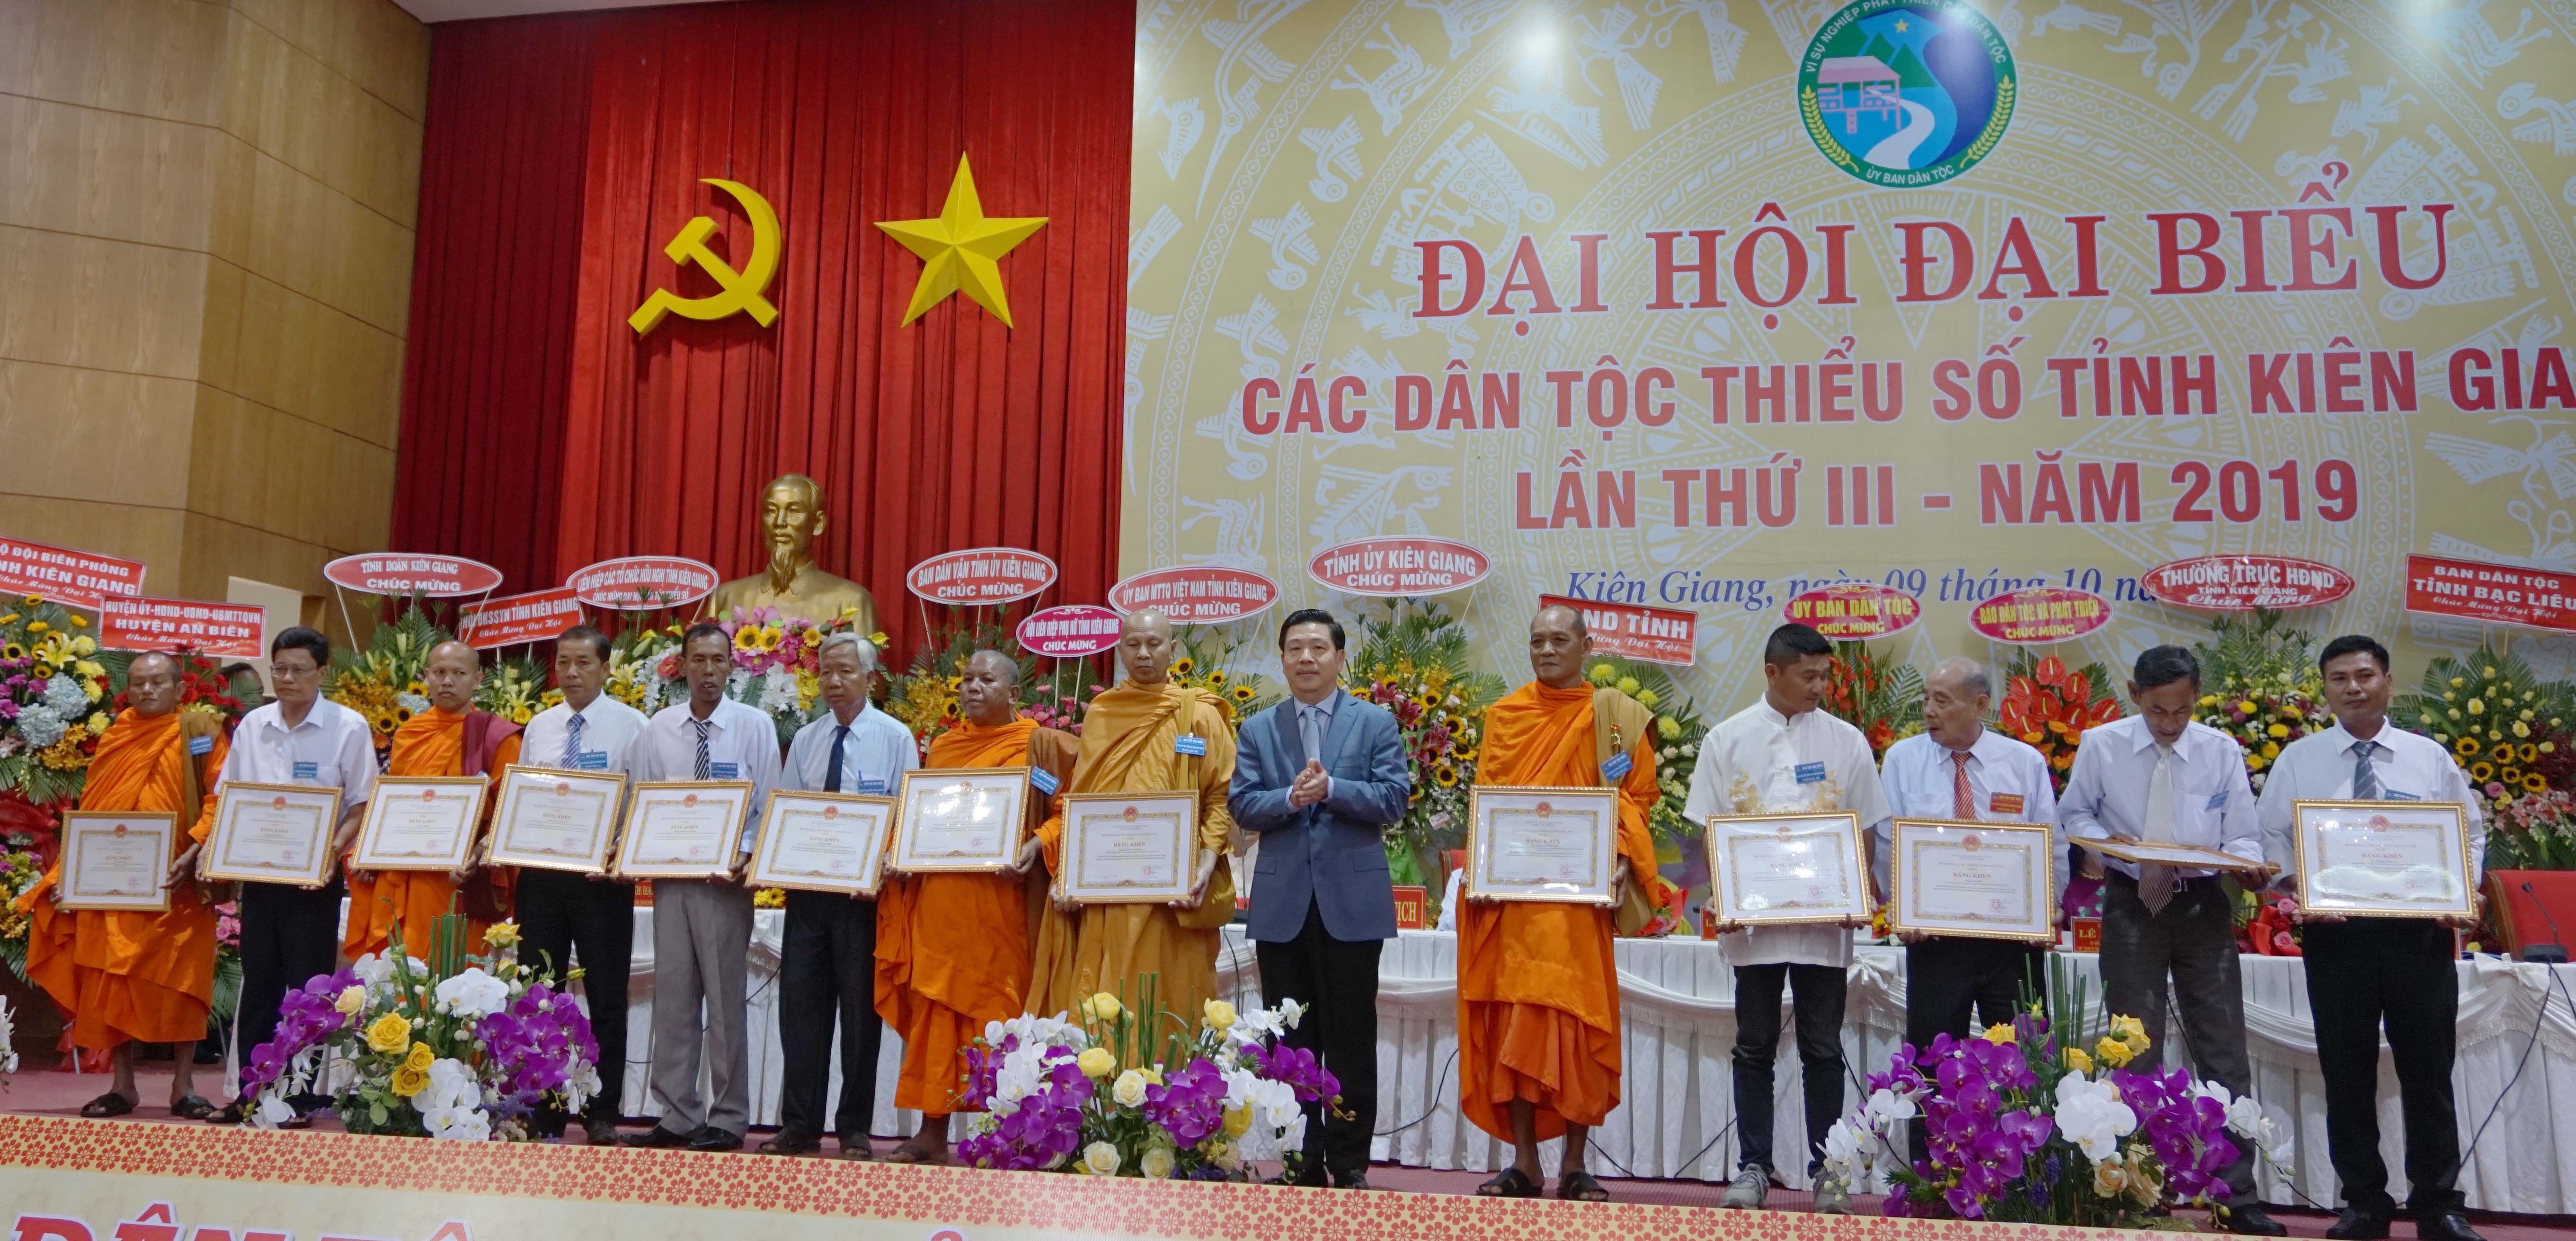 Thứ trưởng, Phó Chủ nhiệm UBDT Lê Sơn Hải trao Bằng khen của UBDT cho các cá nhân xuất sắc